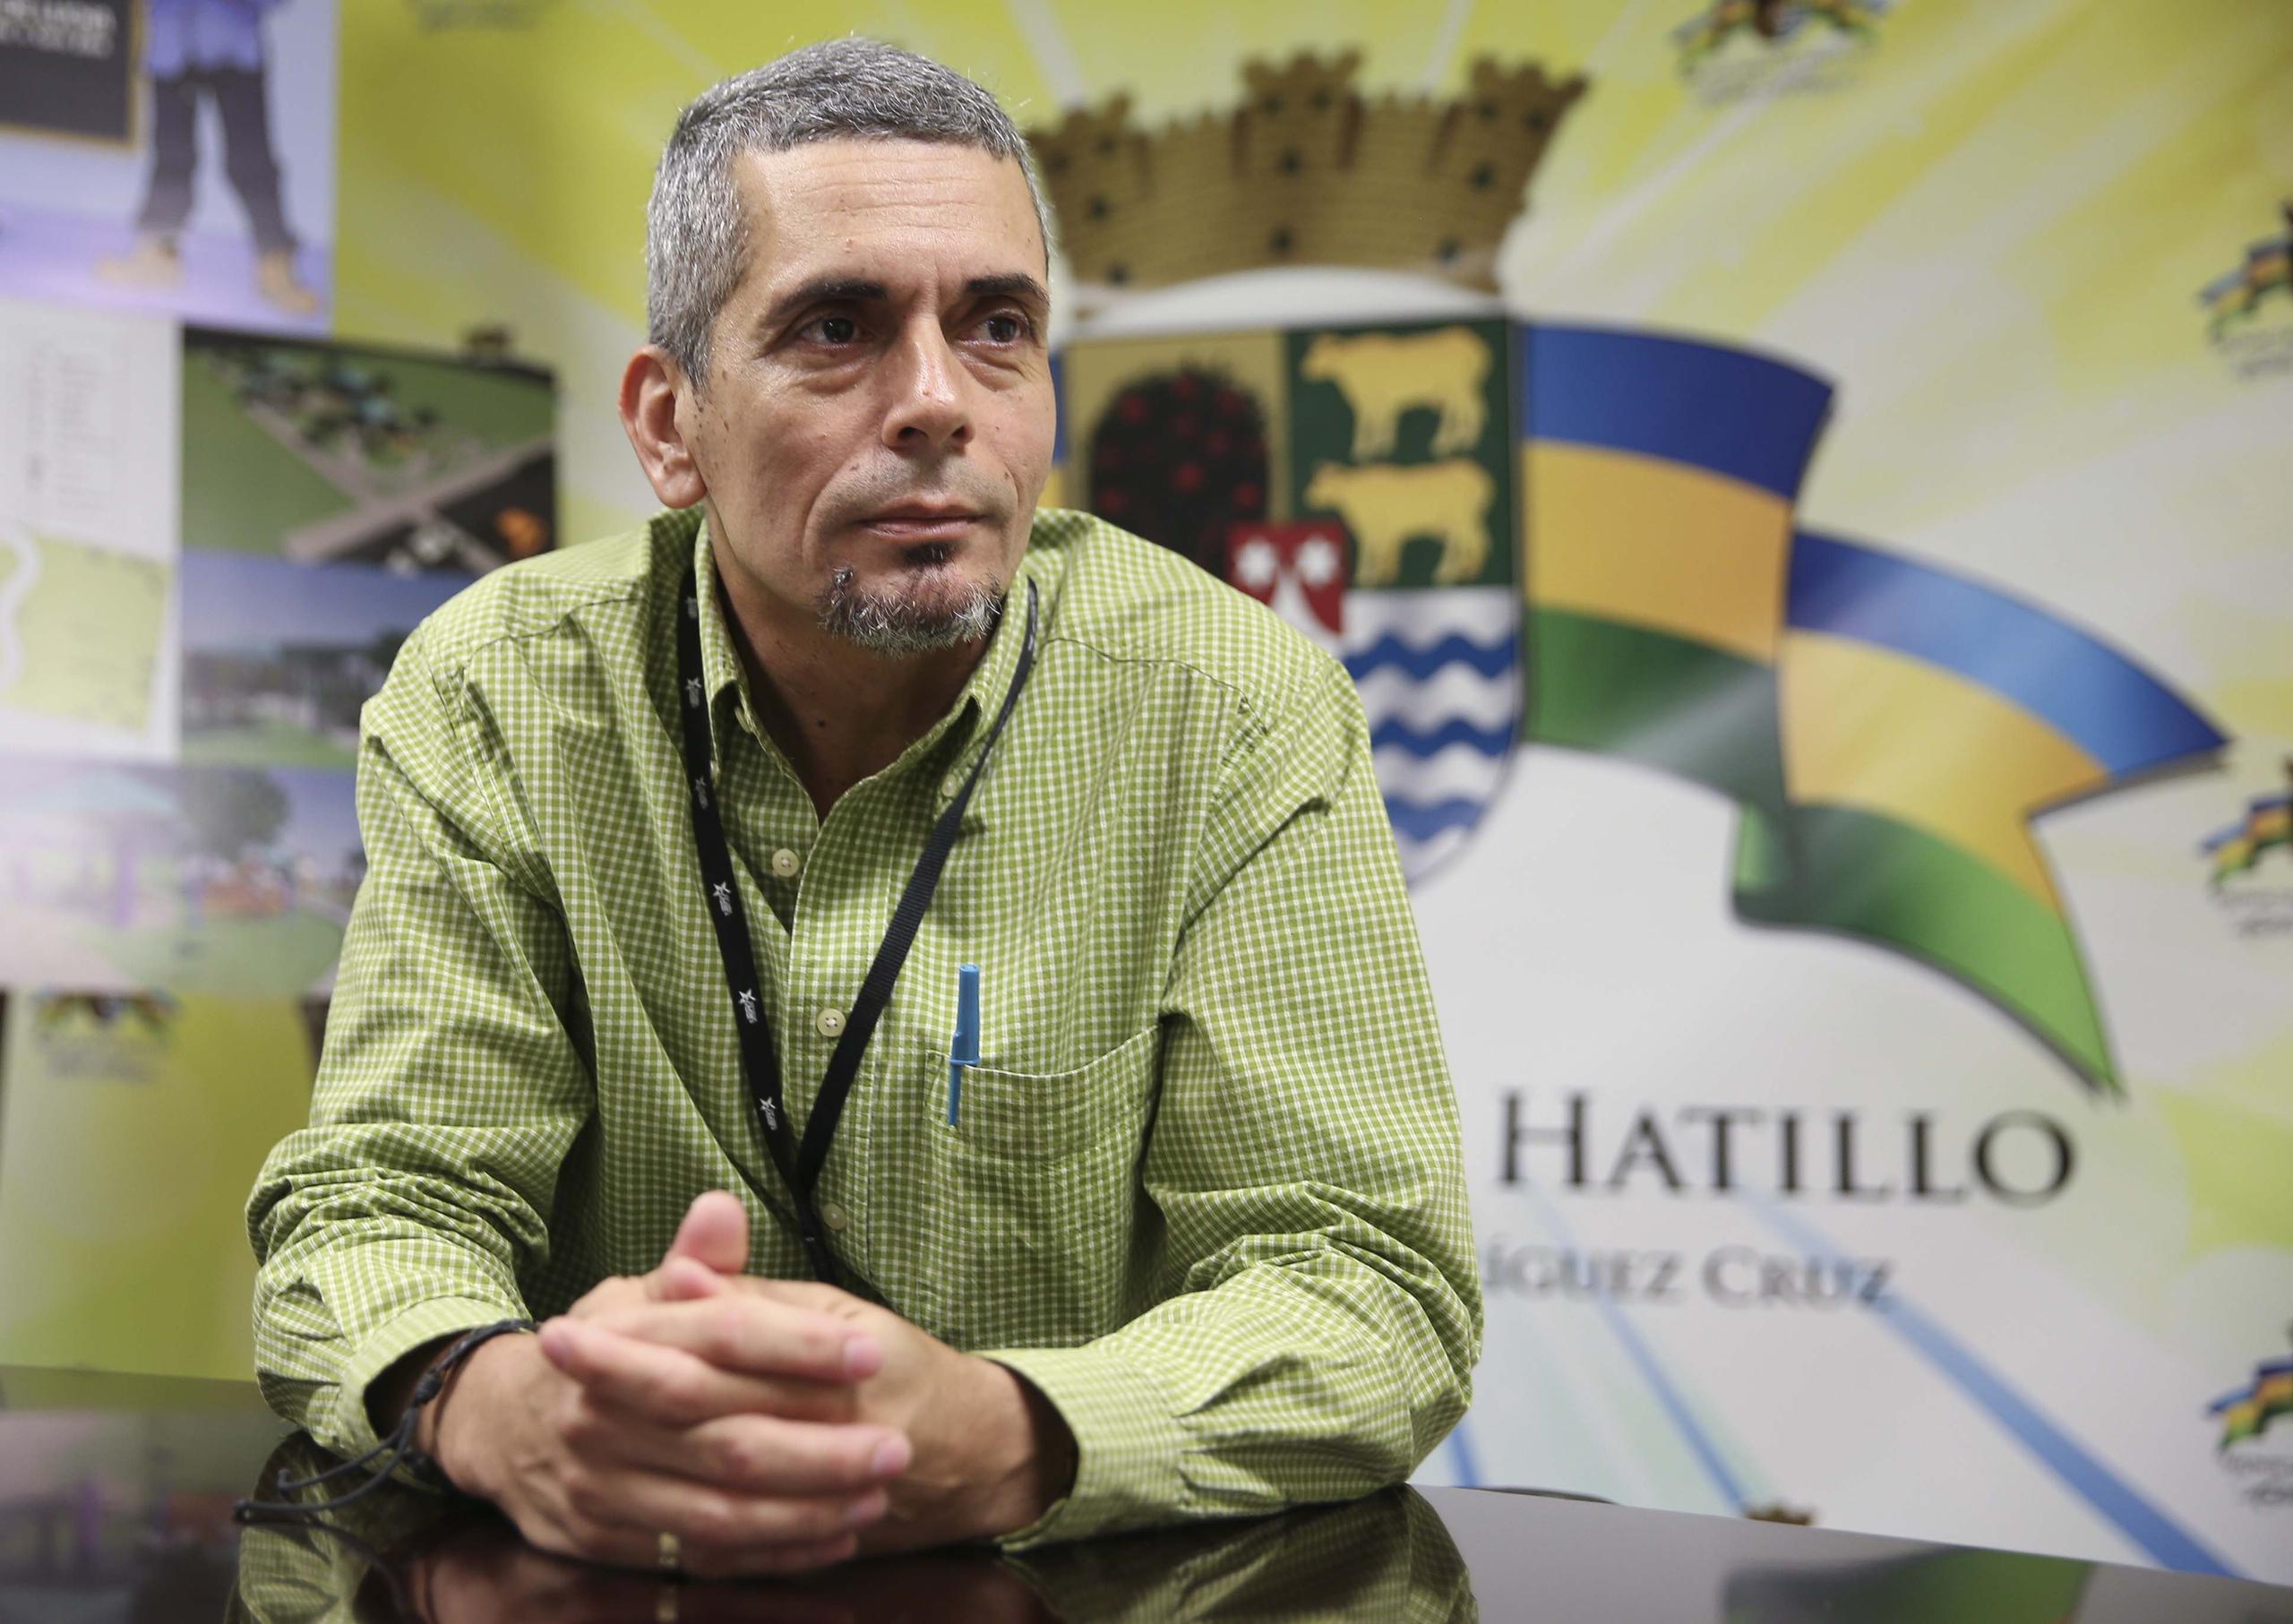 Carlos Román Román era el vicealcalde de Hatillo cuando el entonces alcalde José “Chely” Rodríguez renunció por razones de salud en abril del 2022.